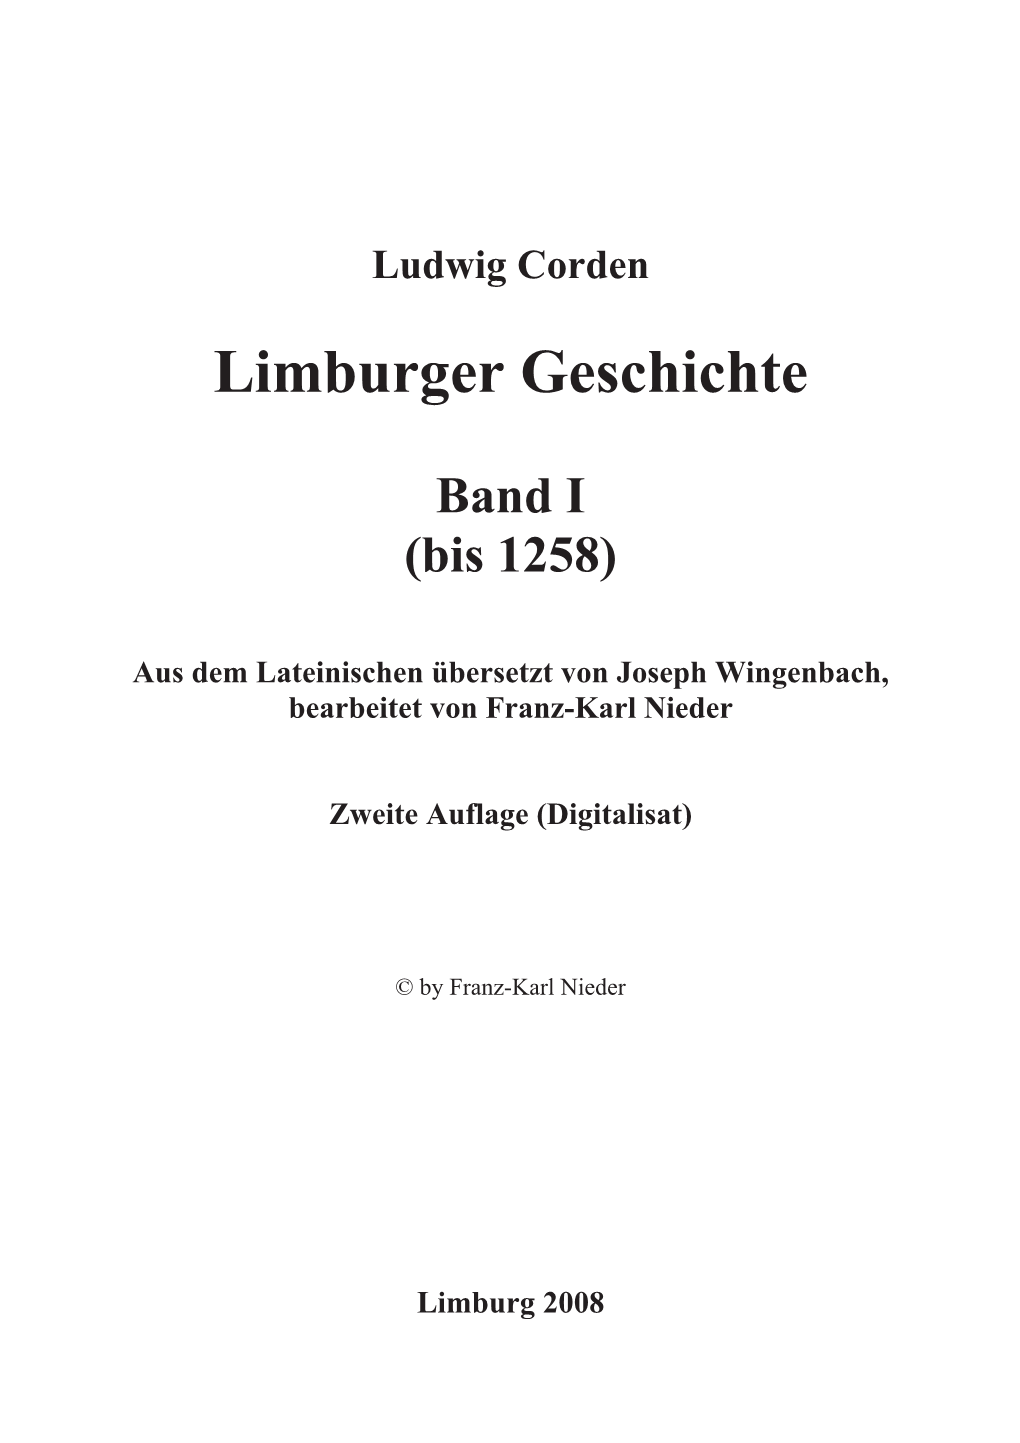 Limburger Geschichte